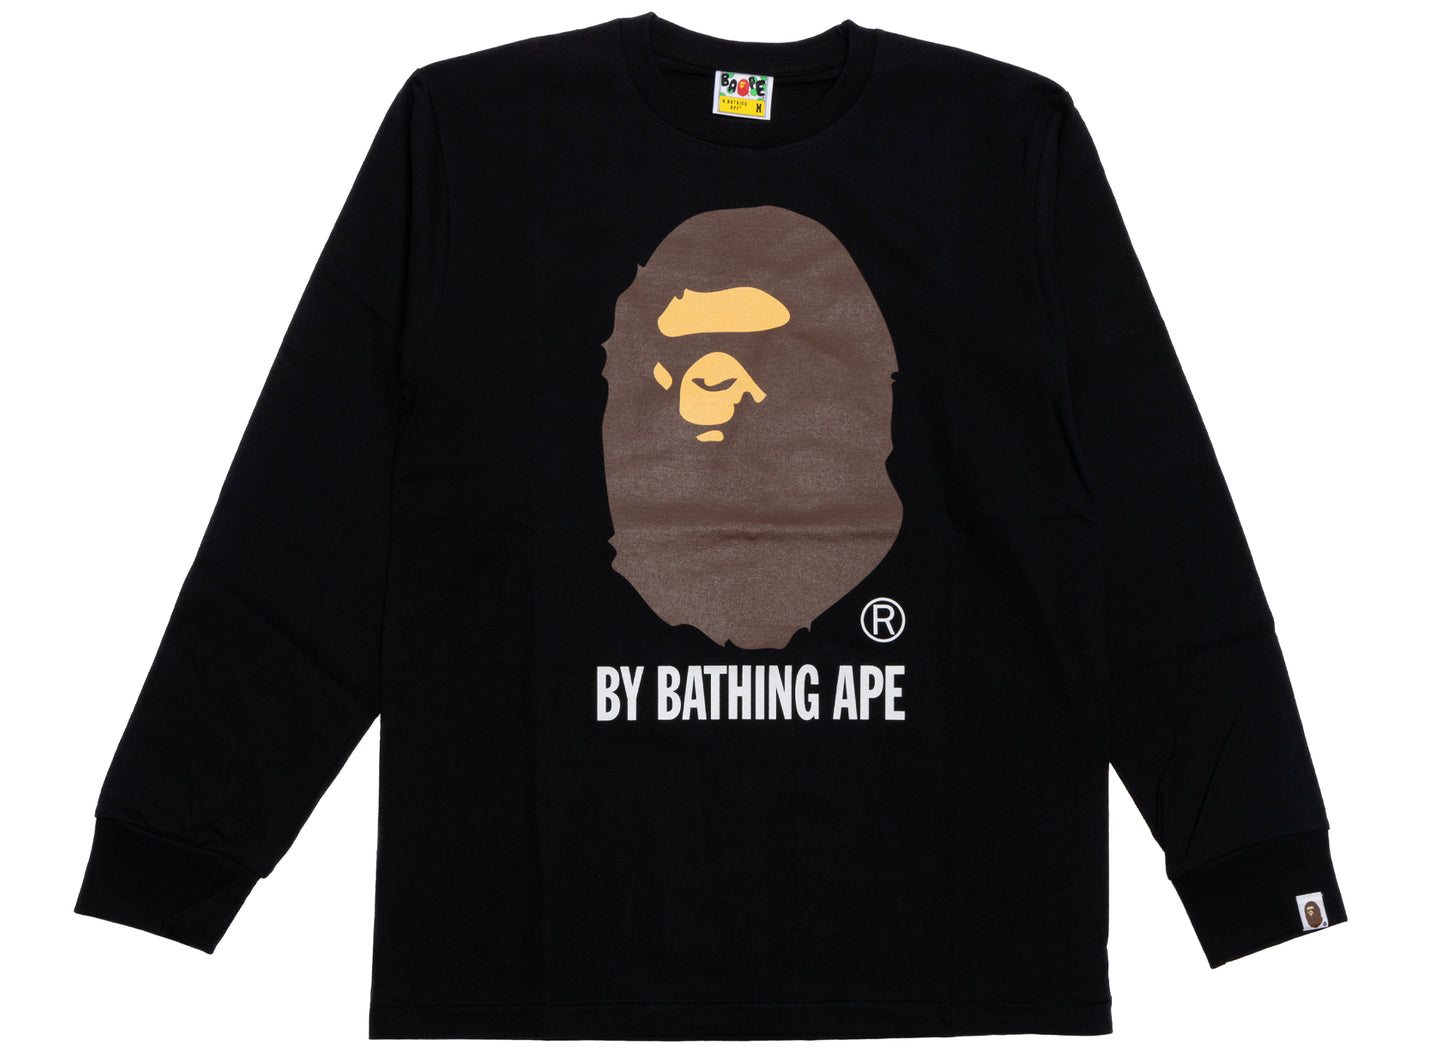 A Bathing Ape by Bathing Ape L/S Tee in Black xld